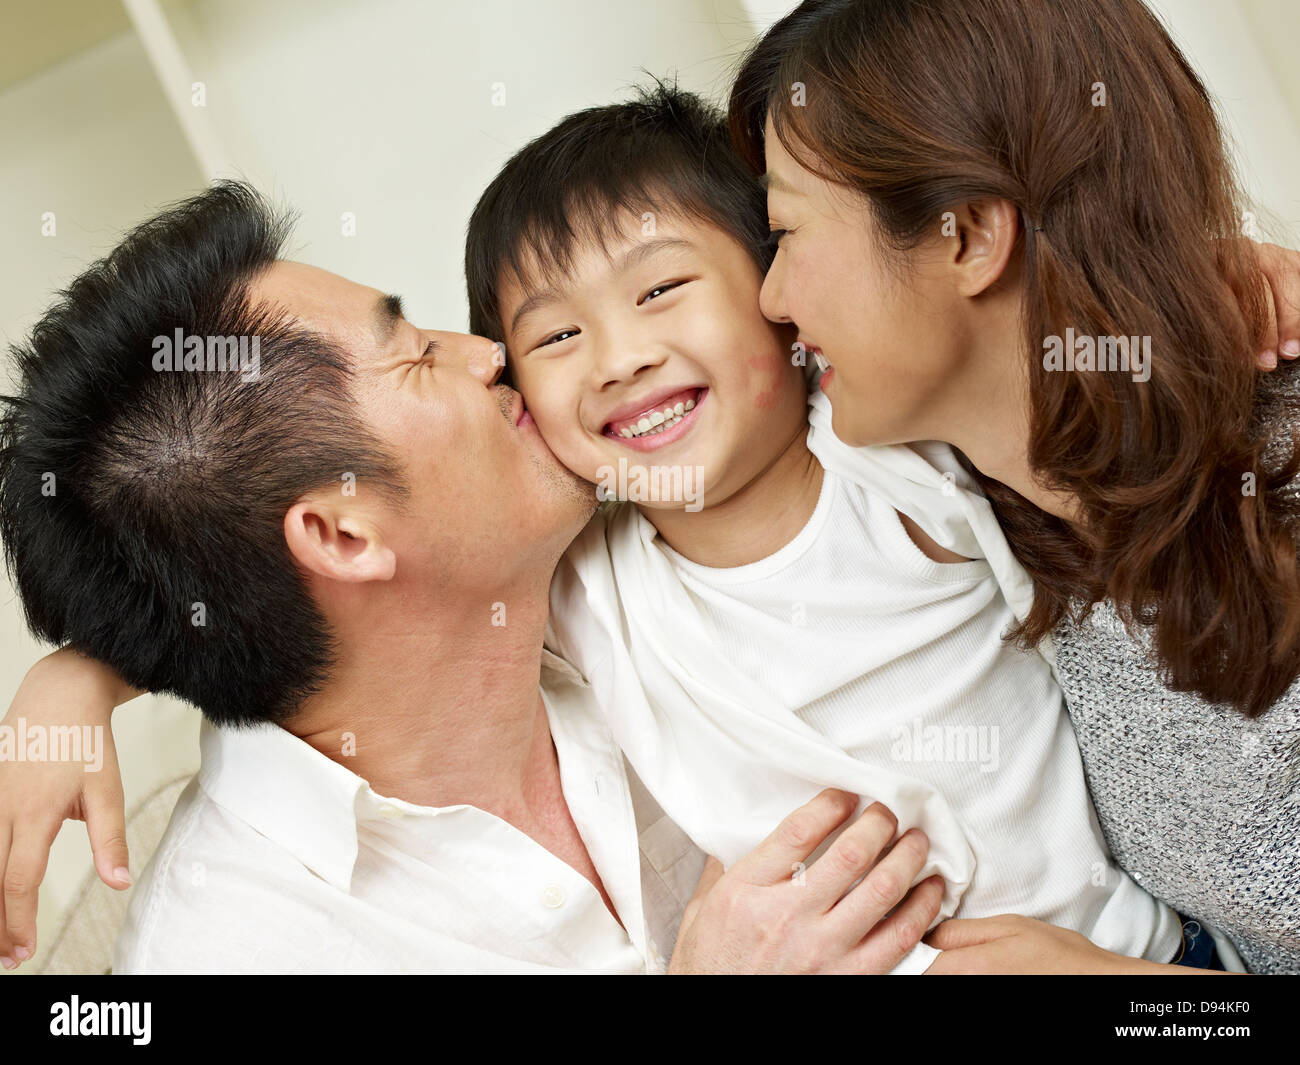 loving family Stock Photo